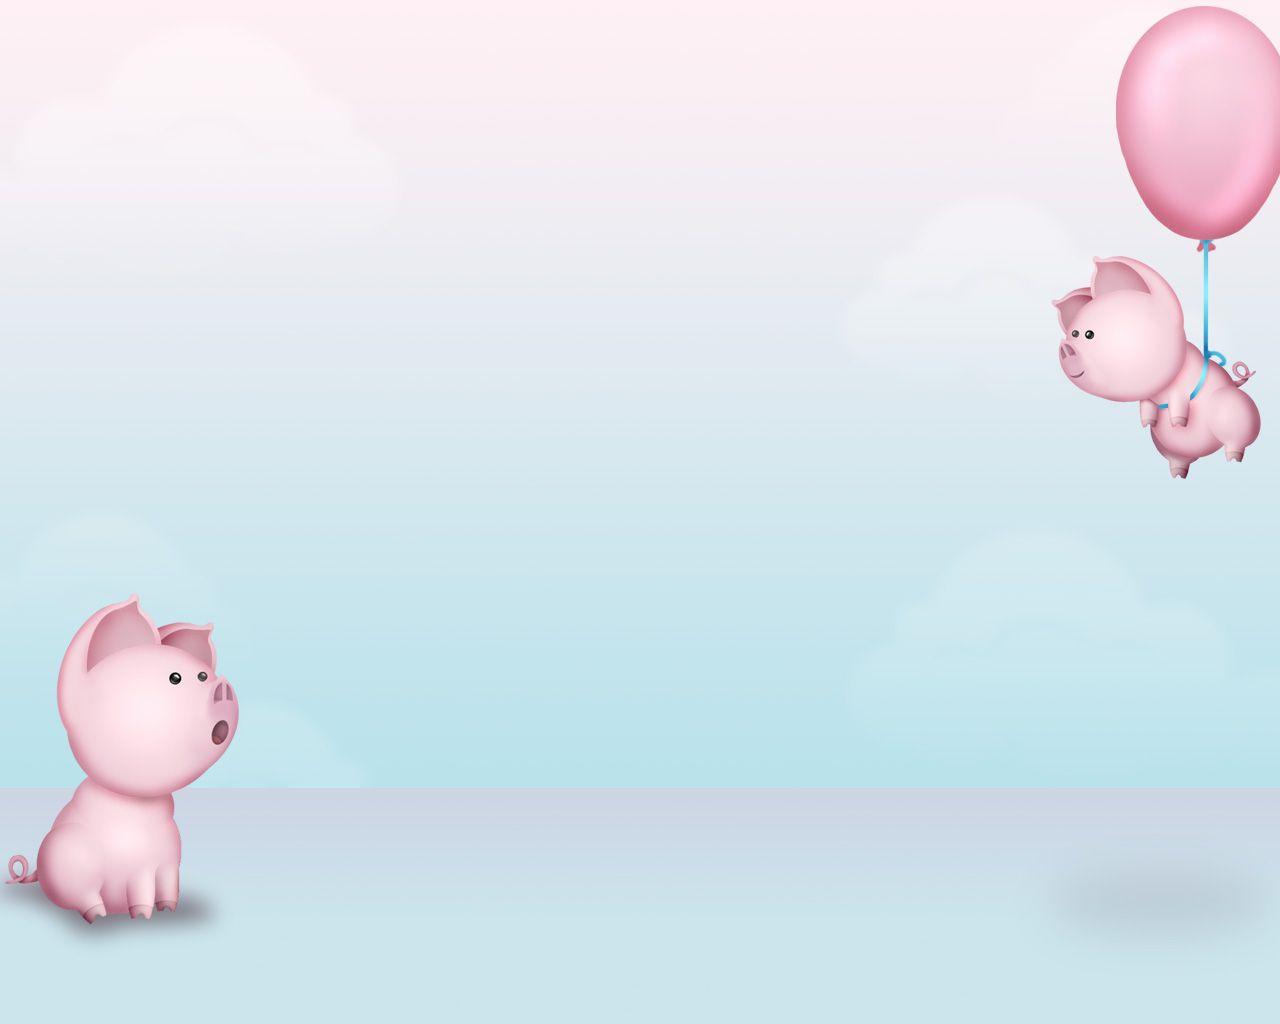 Piggy Background By Jen Jamieson